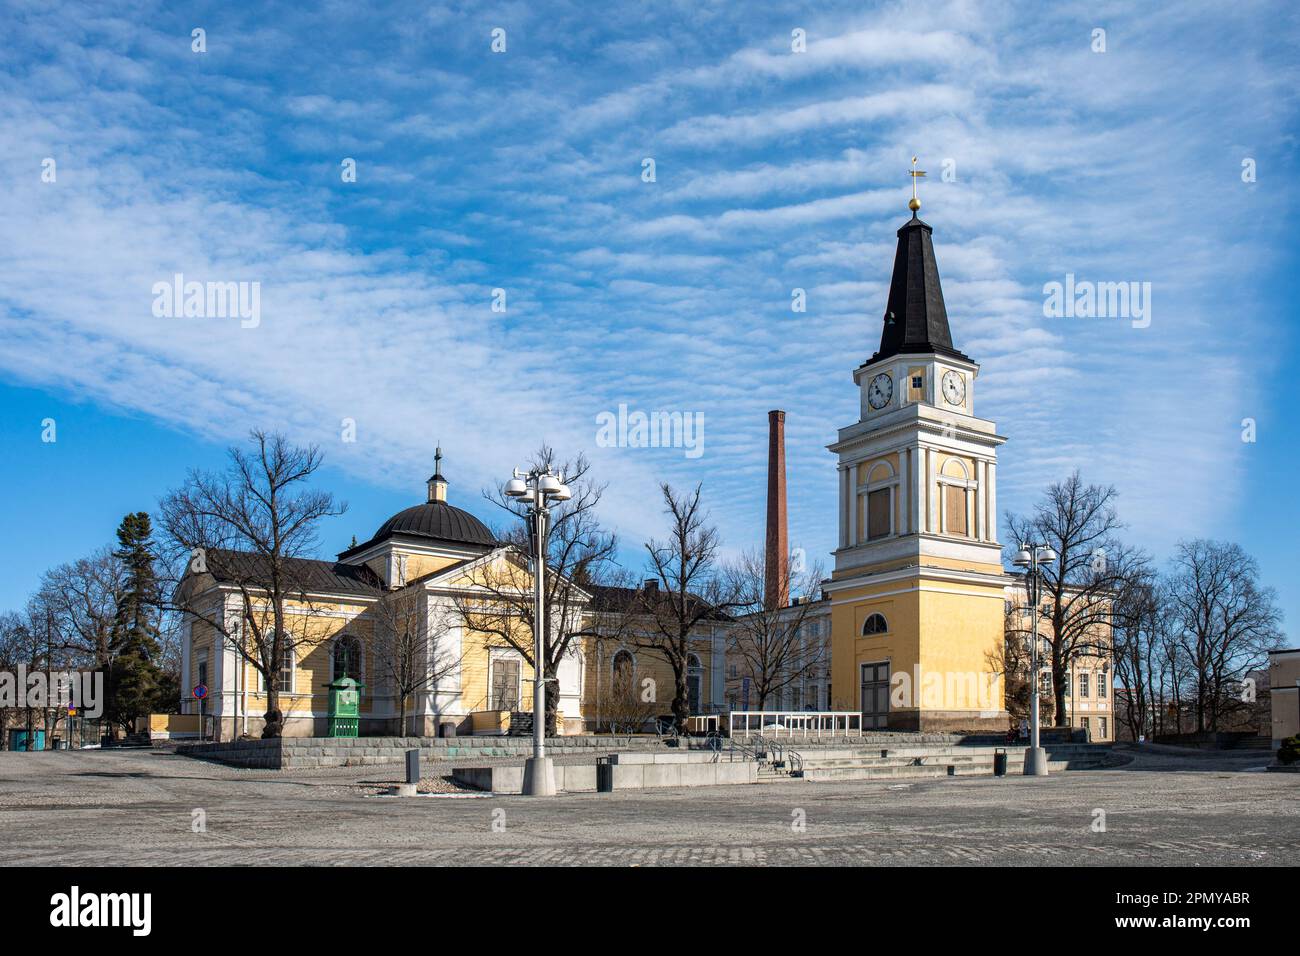 Alte Holzkirche (1824), entworfen von Carlo Bassi, und Glockenturm (1828), entworfen von C.L. Engel, am Rande des zentralen Platzes in Tampere, Finnland Stockfoto